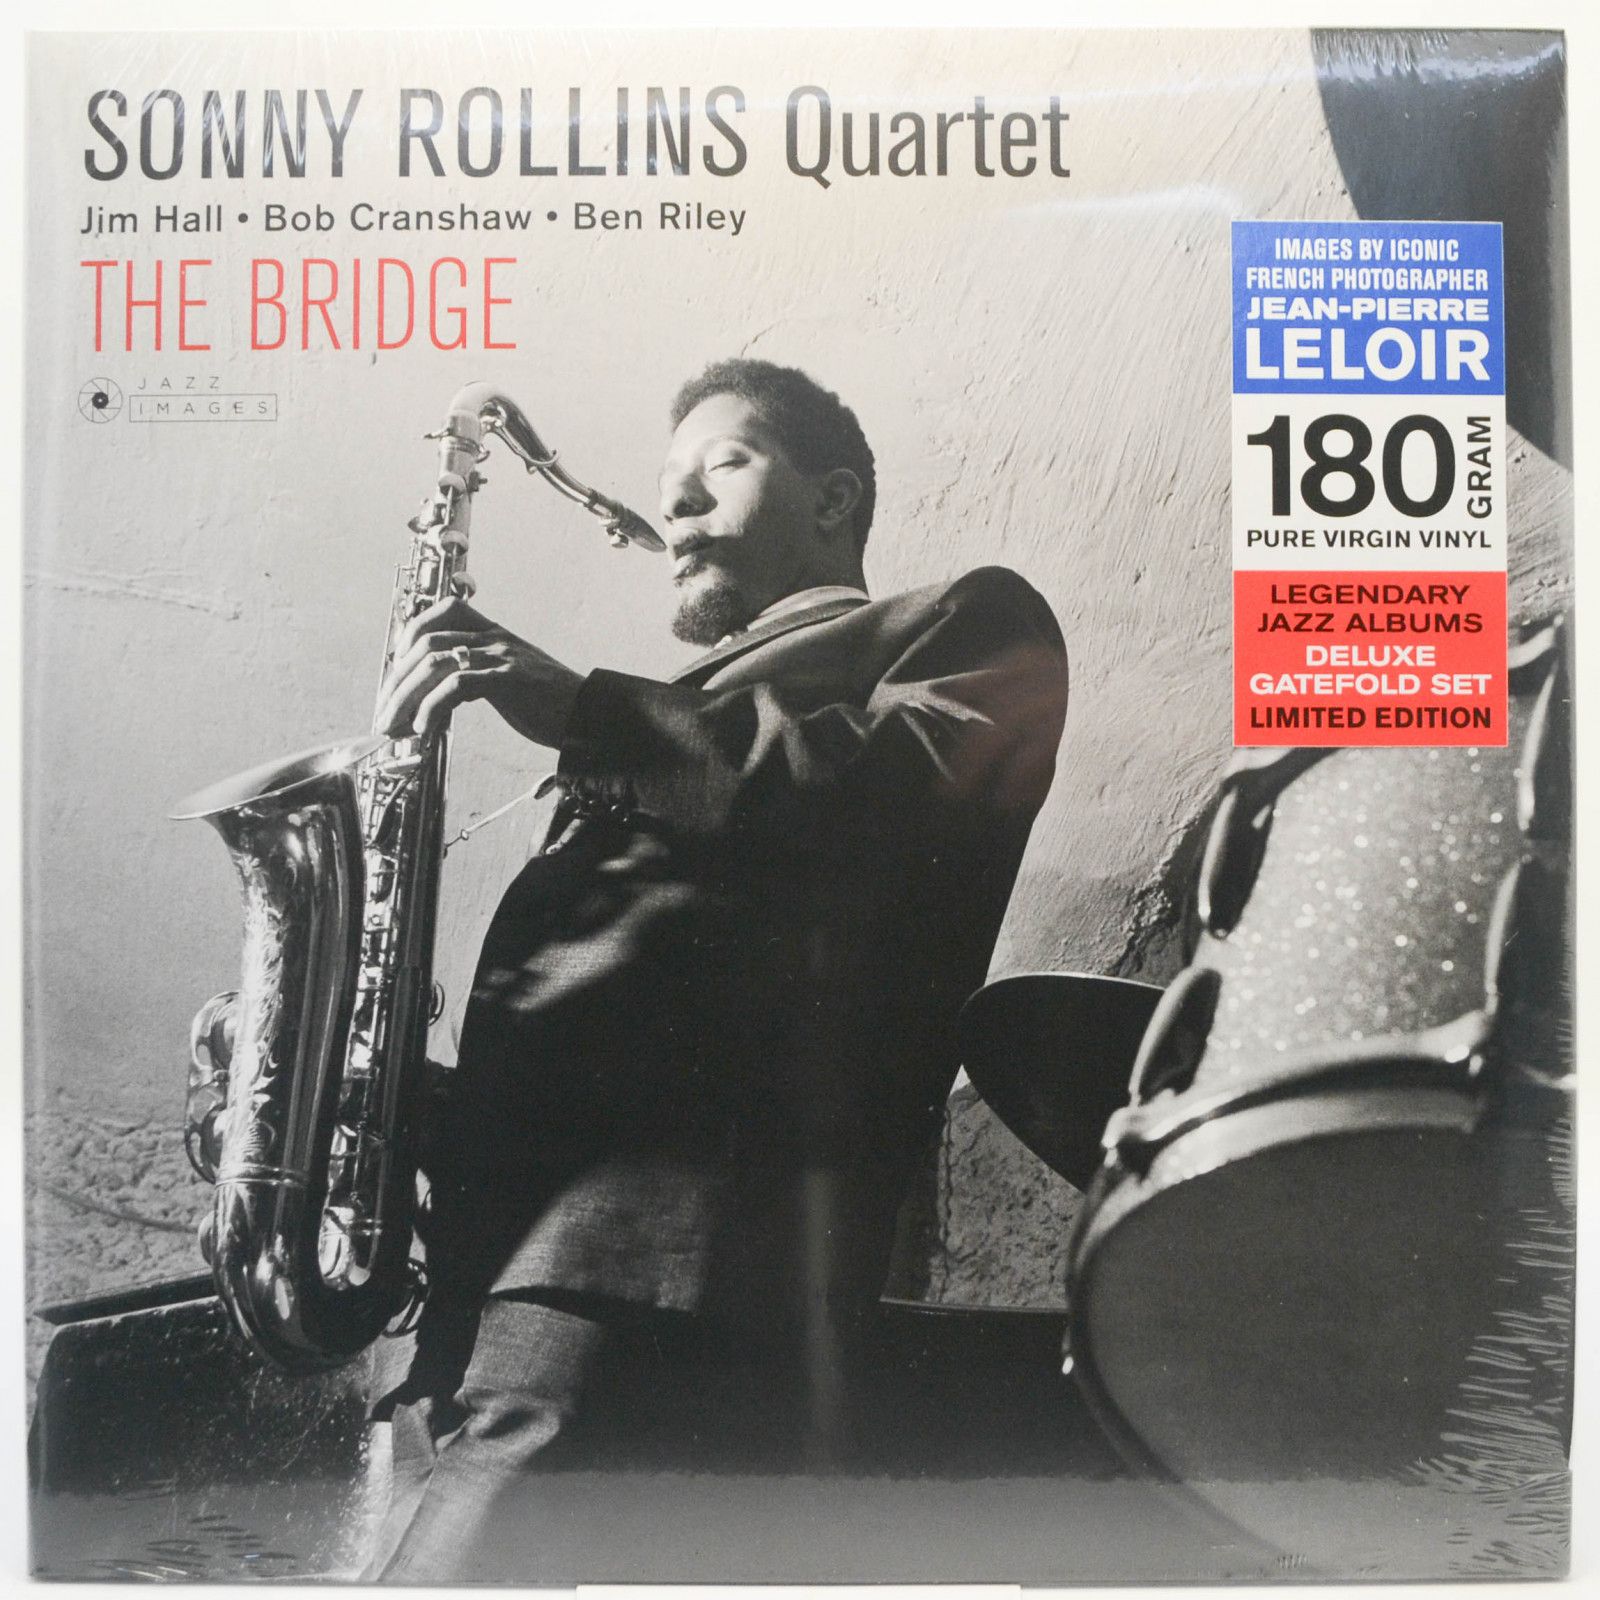 Sonny Rollins Quartet — The Bridge, 1962